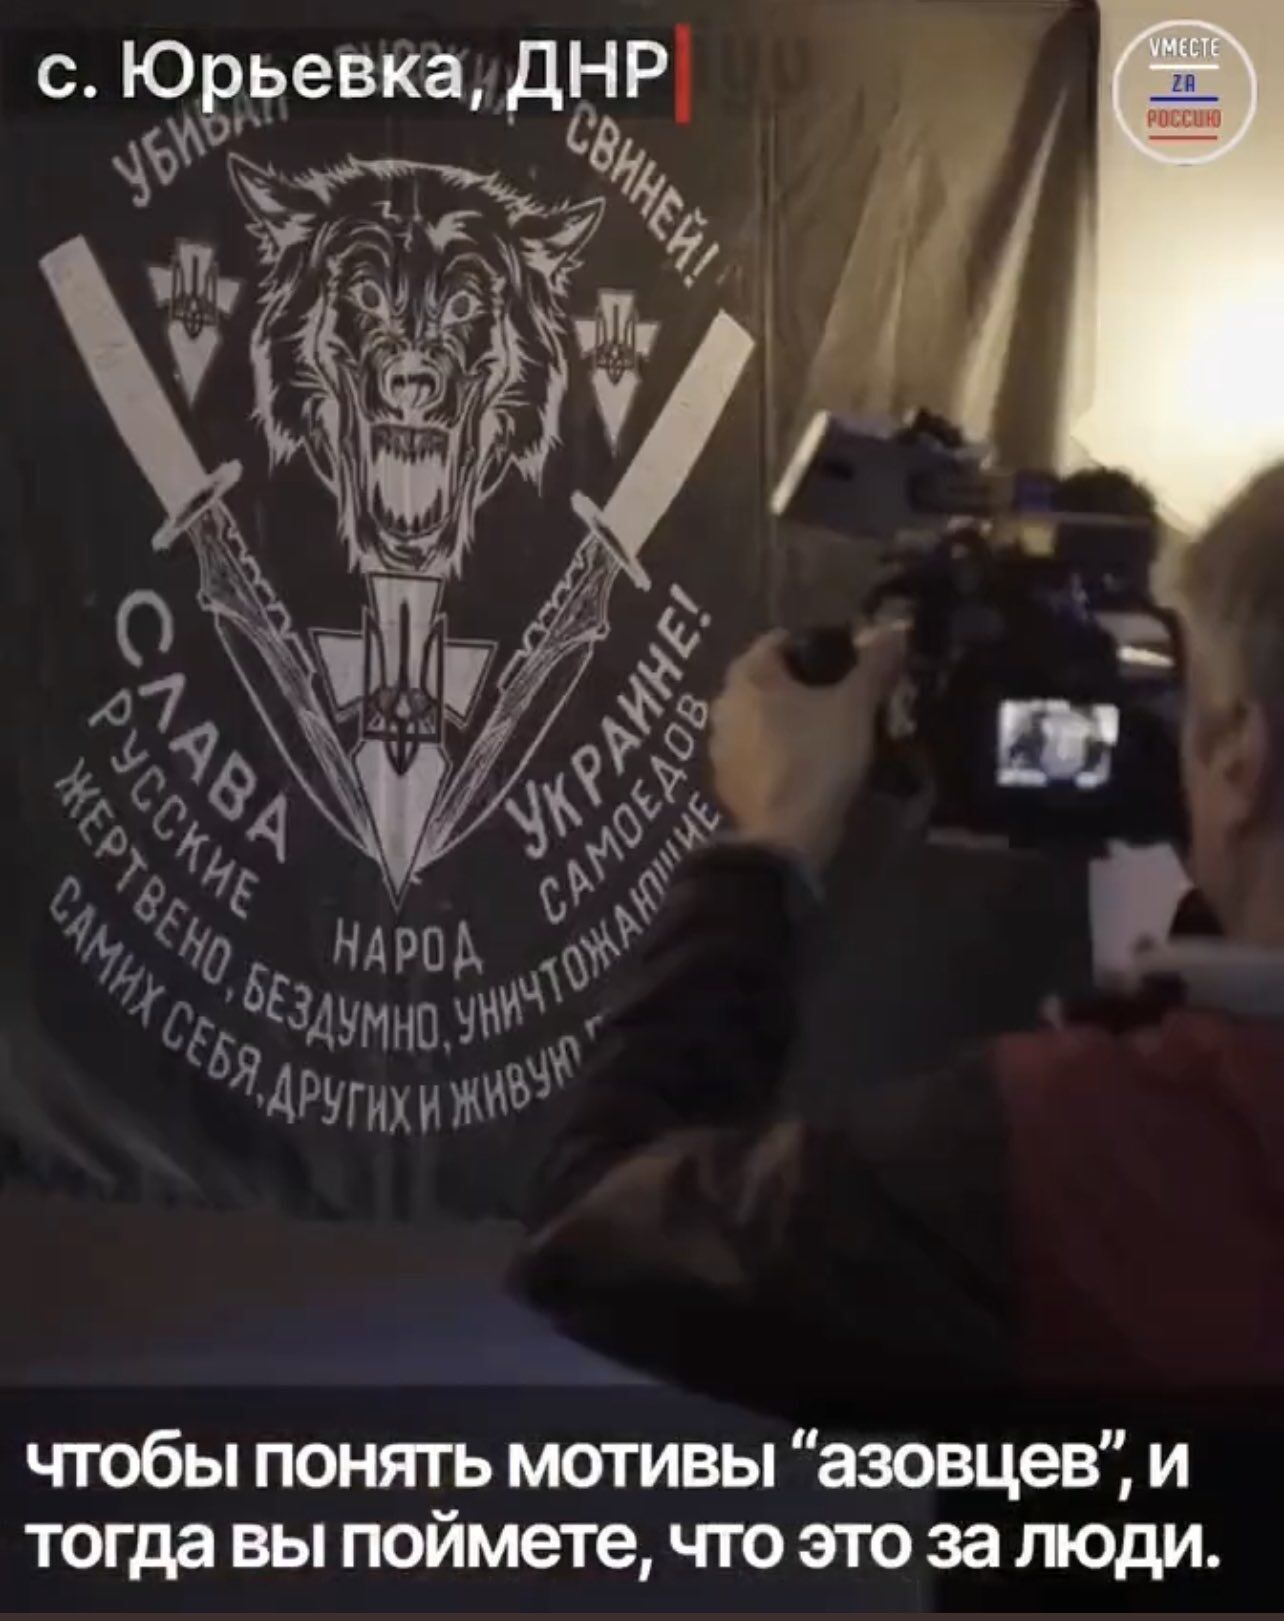 "Доказательство" - "нацистский флаг" азовцев на русском языке